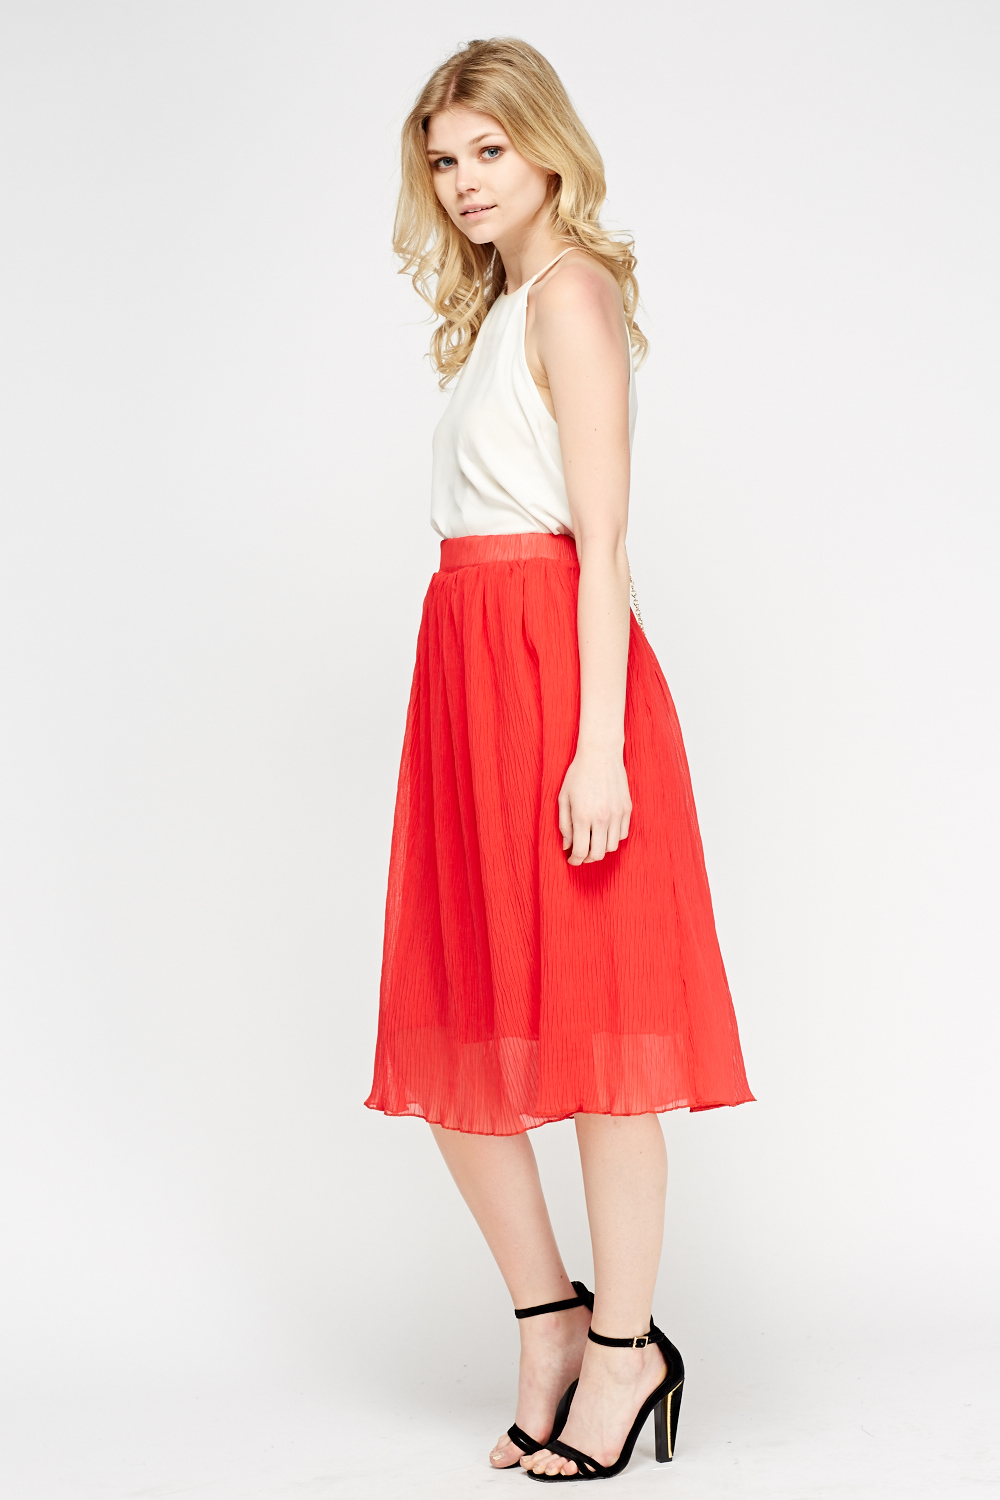 Red Pleated Midi Skirt - Just $7